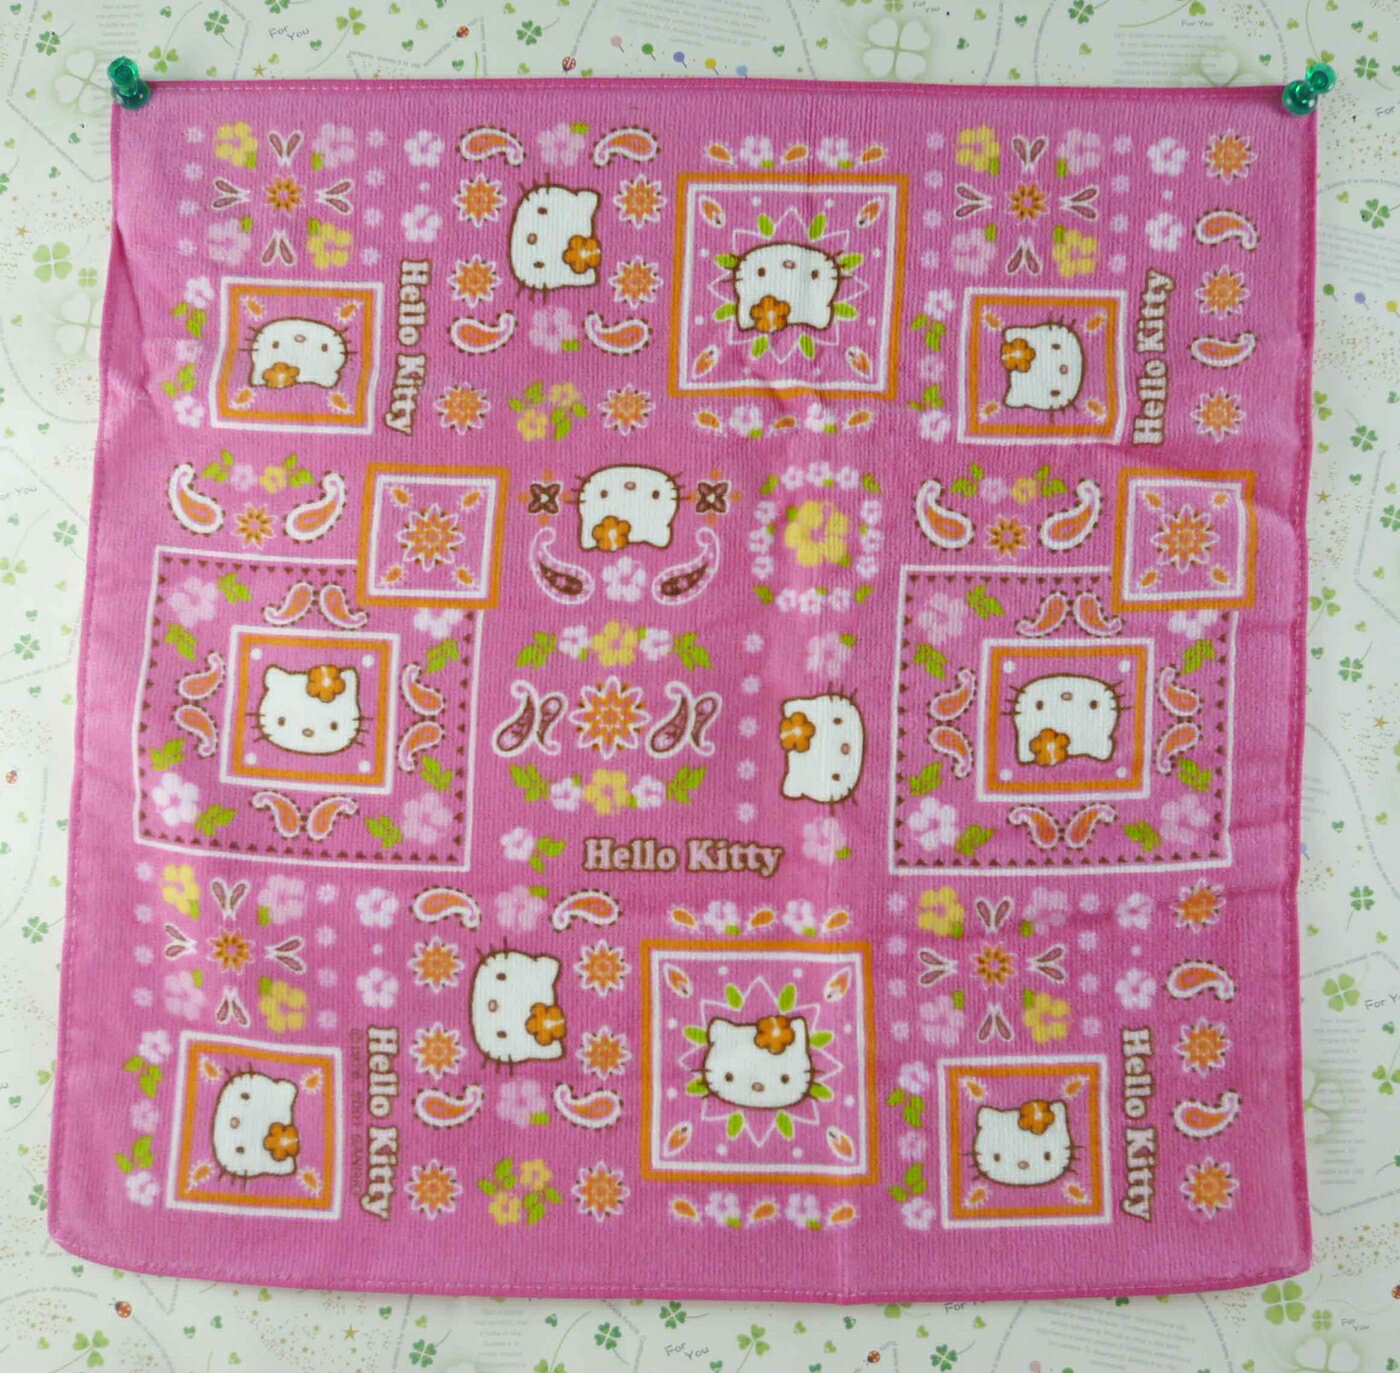 【震撼精品百貨】Hello Kitty 凱蒂貓 方巾-限量款-粉桃花 震撼日式精品百貨